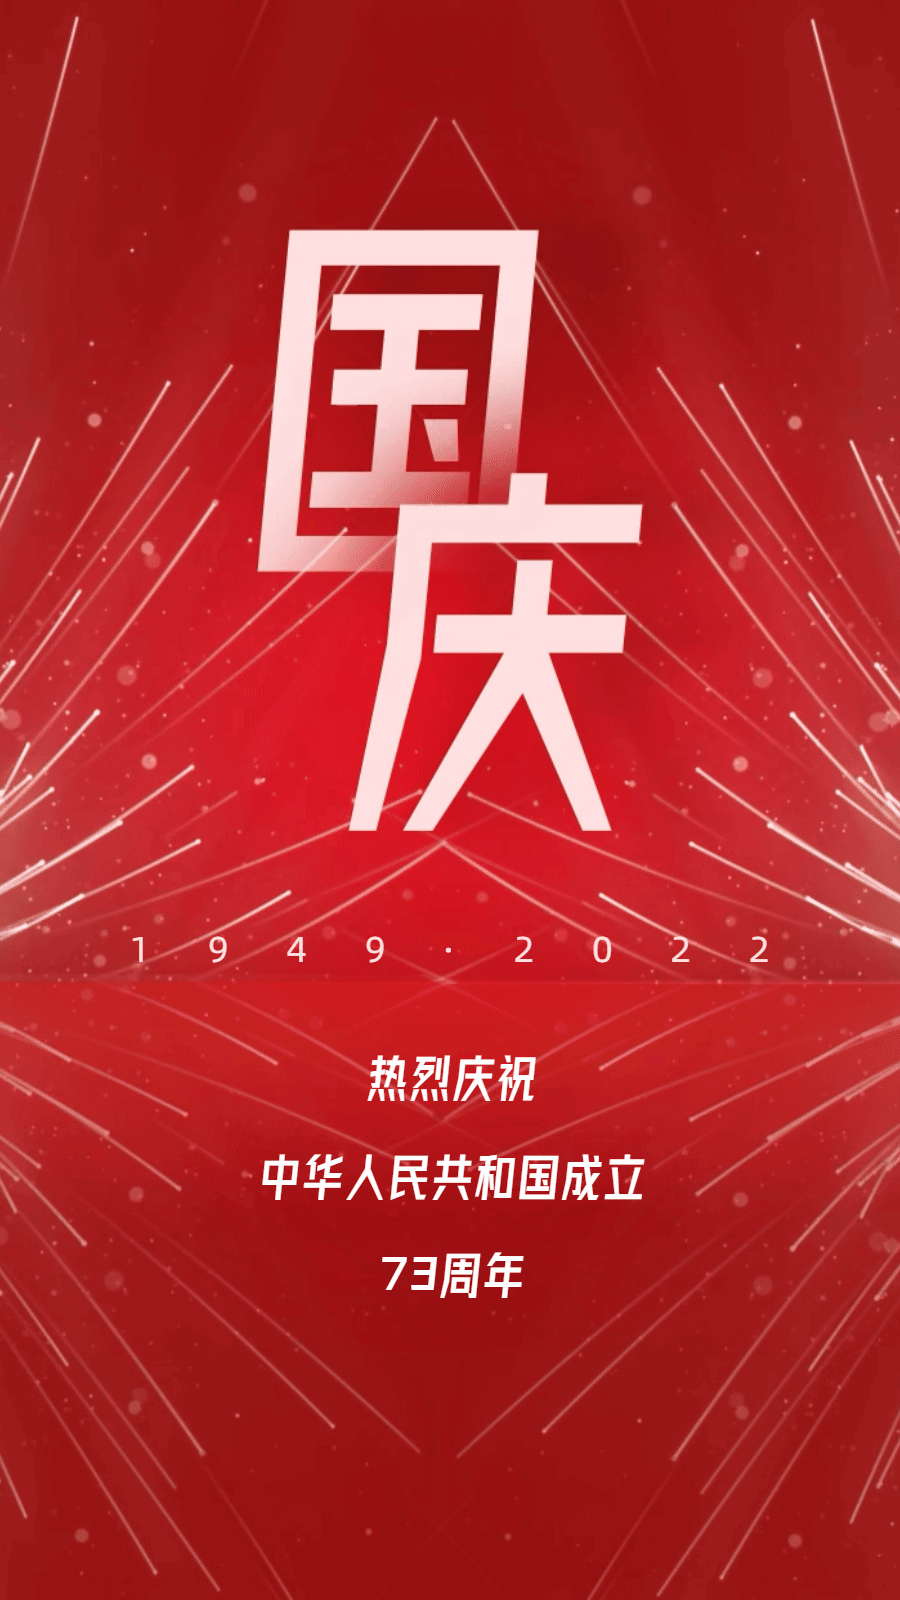 国庆节节日祝福动态海报